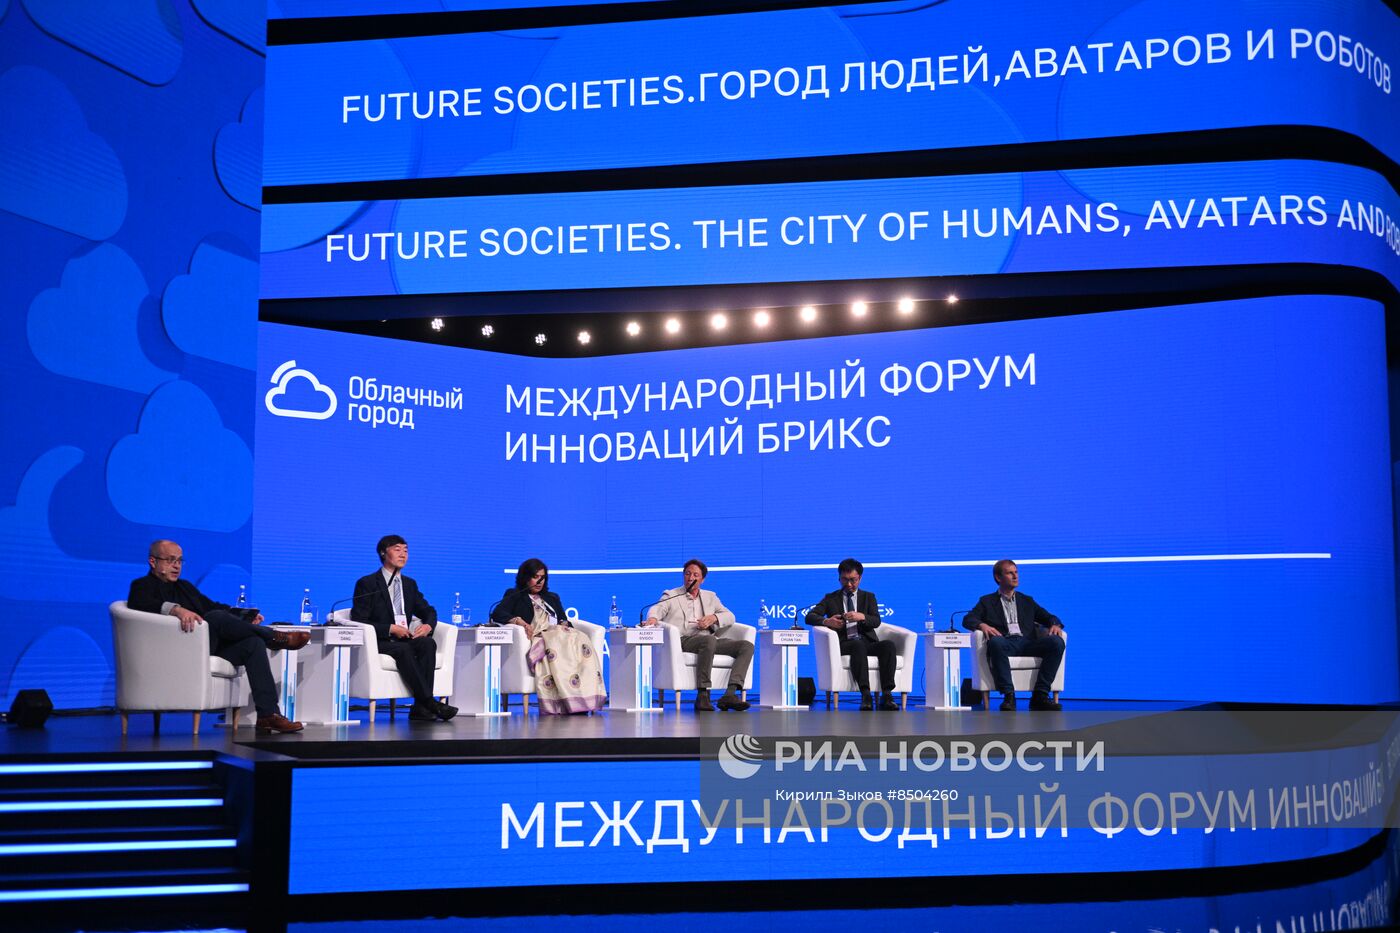 Международный форум инноваций БРИКС "Облачный город"